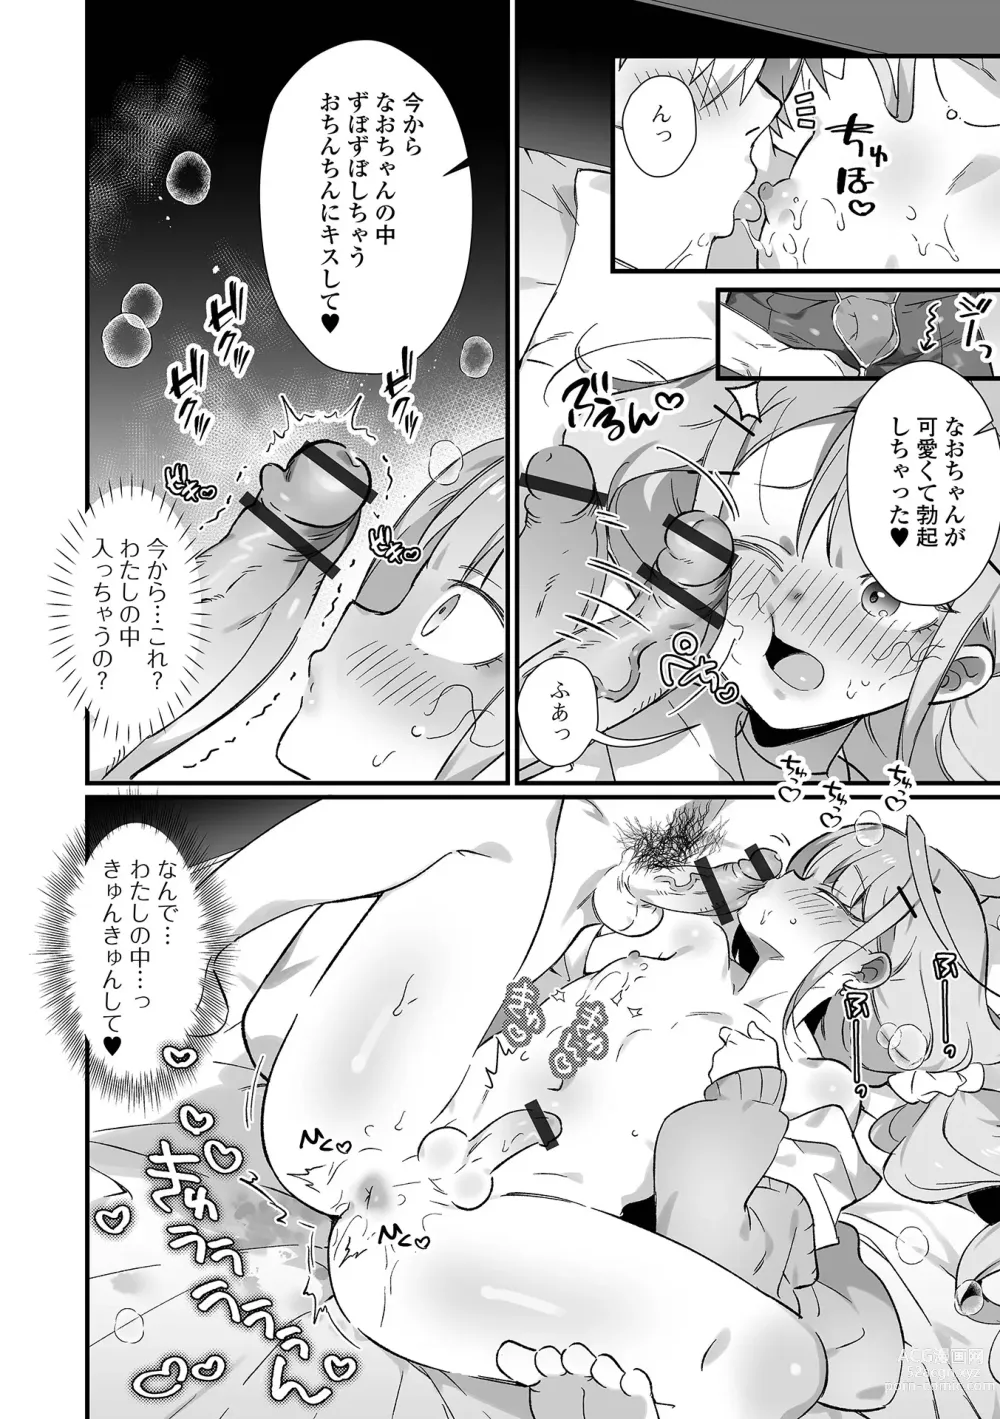 Page 10 of manga Gekkan Web Otoko no Ko-llection! S Vol. 86